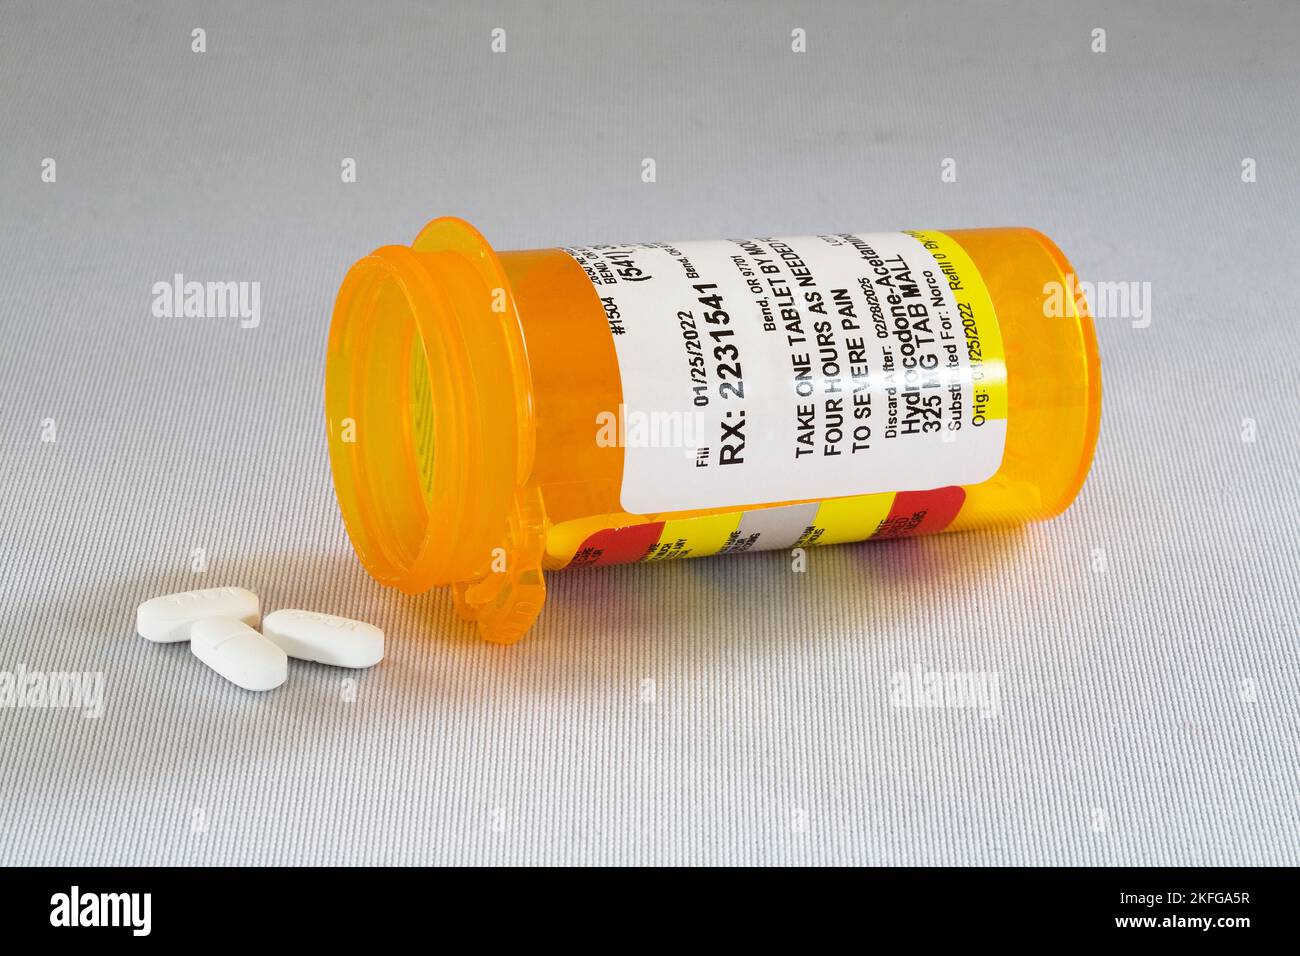 Ein Behälter mit Hydrocodin, dem von vielen Ärzten verordneten, süchtig machenden Opioid-Schmerzmittel. Viele Menschen sind süchtig geworden und viele andere sind Fr. Stockfoto